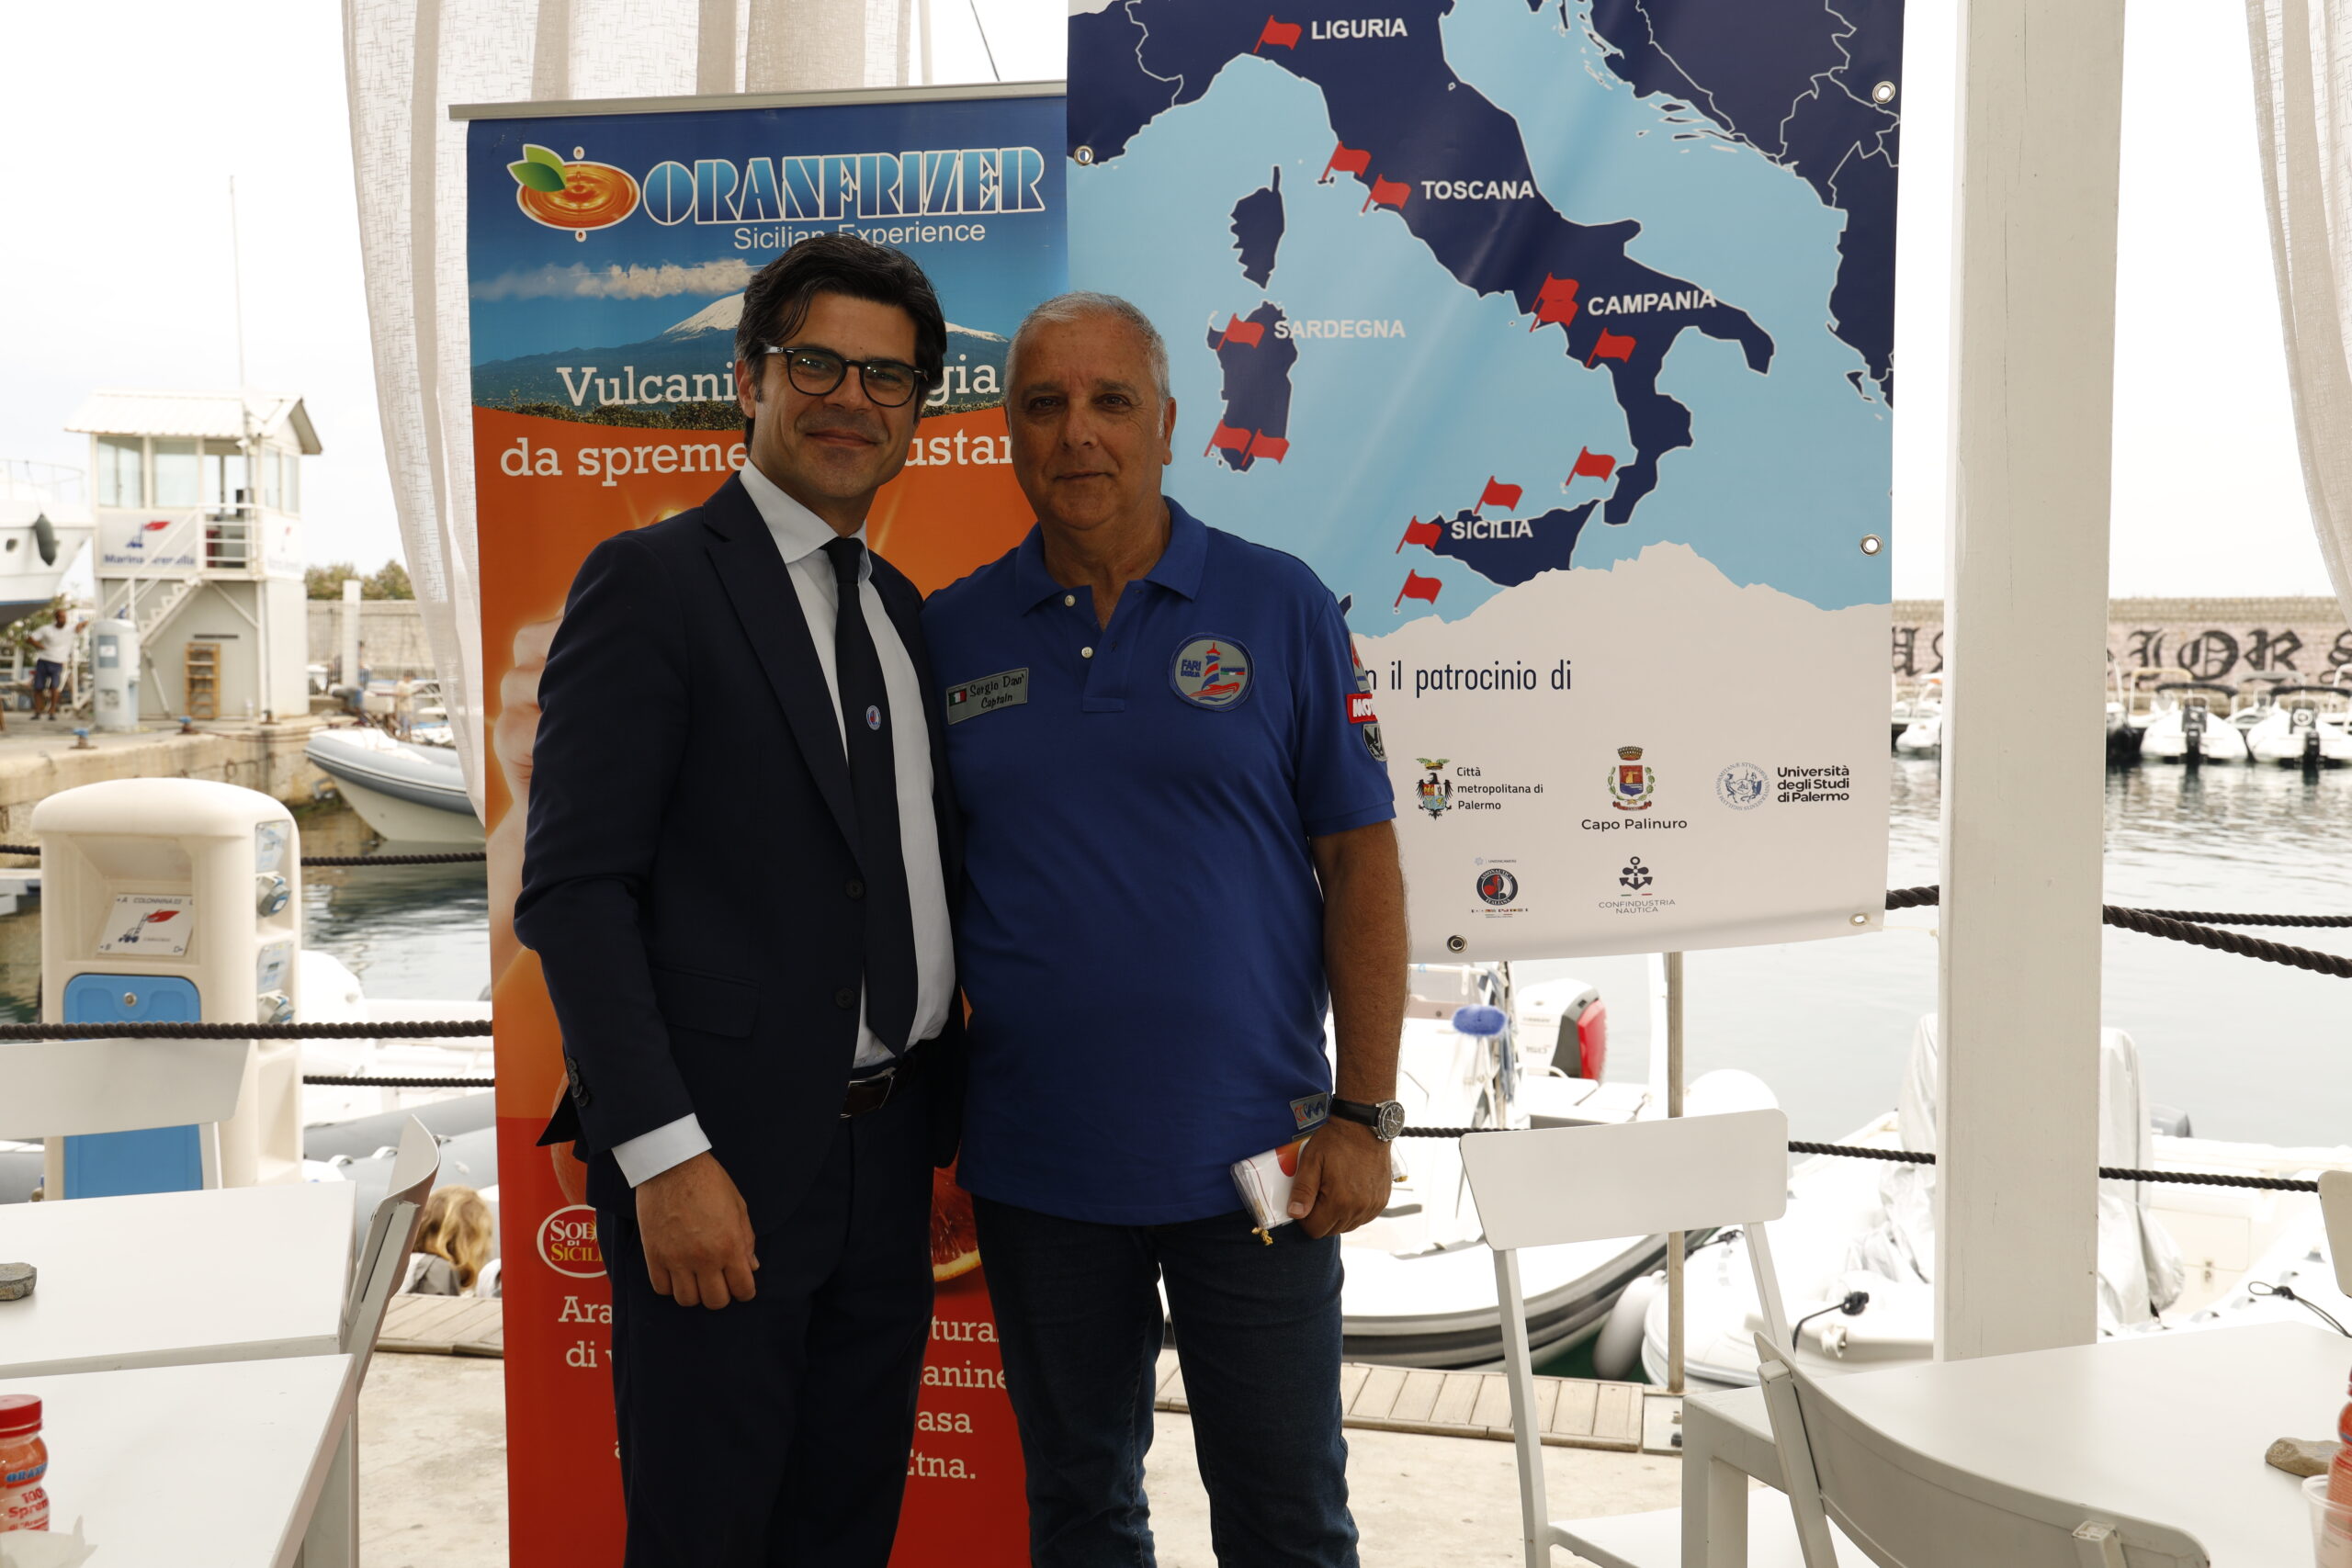 Sergio Davì e l’avventura in mare da Genova a Palermo tra i fari del Tirreno: Palinuro tra le tappe